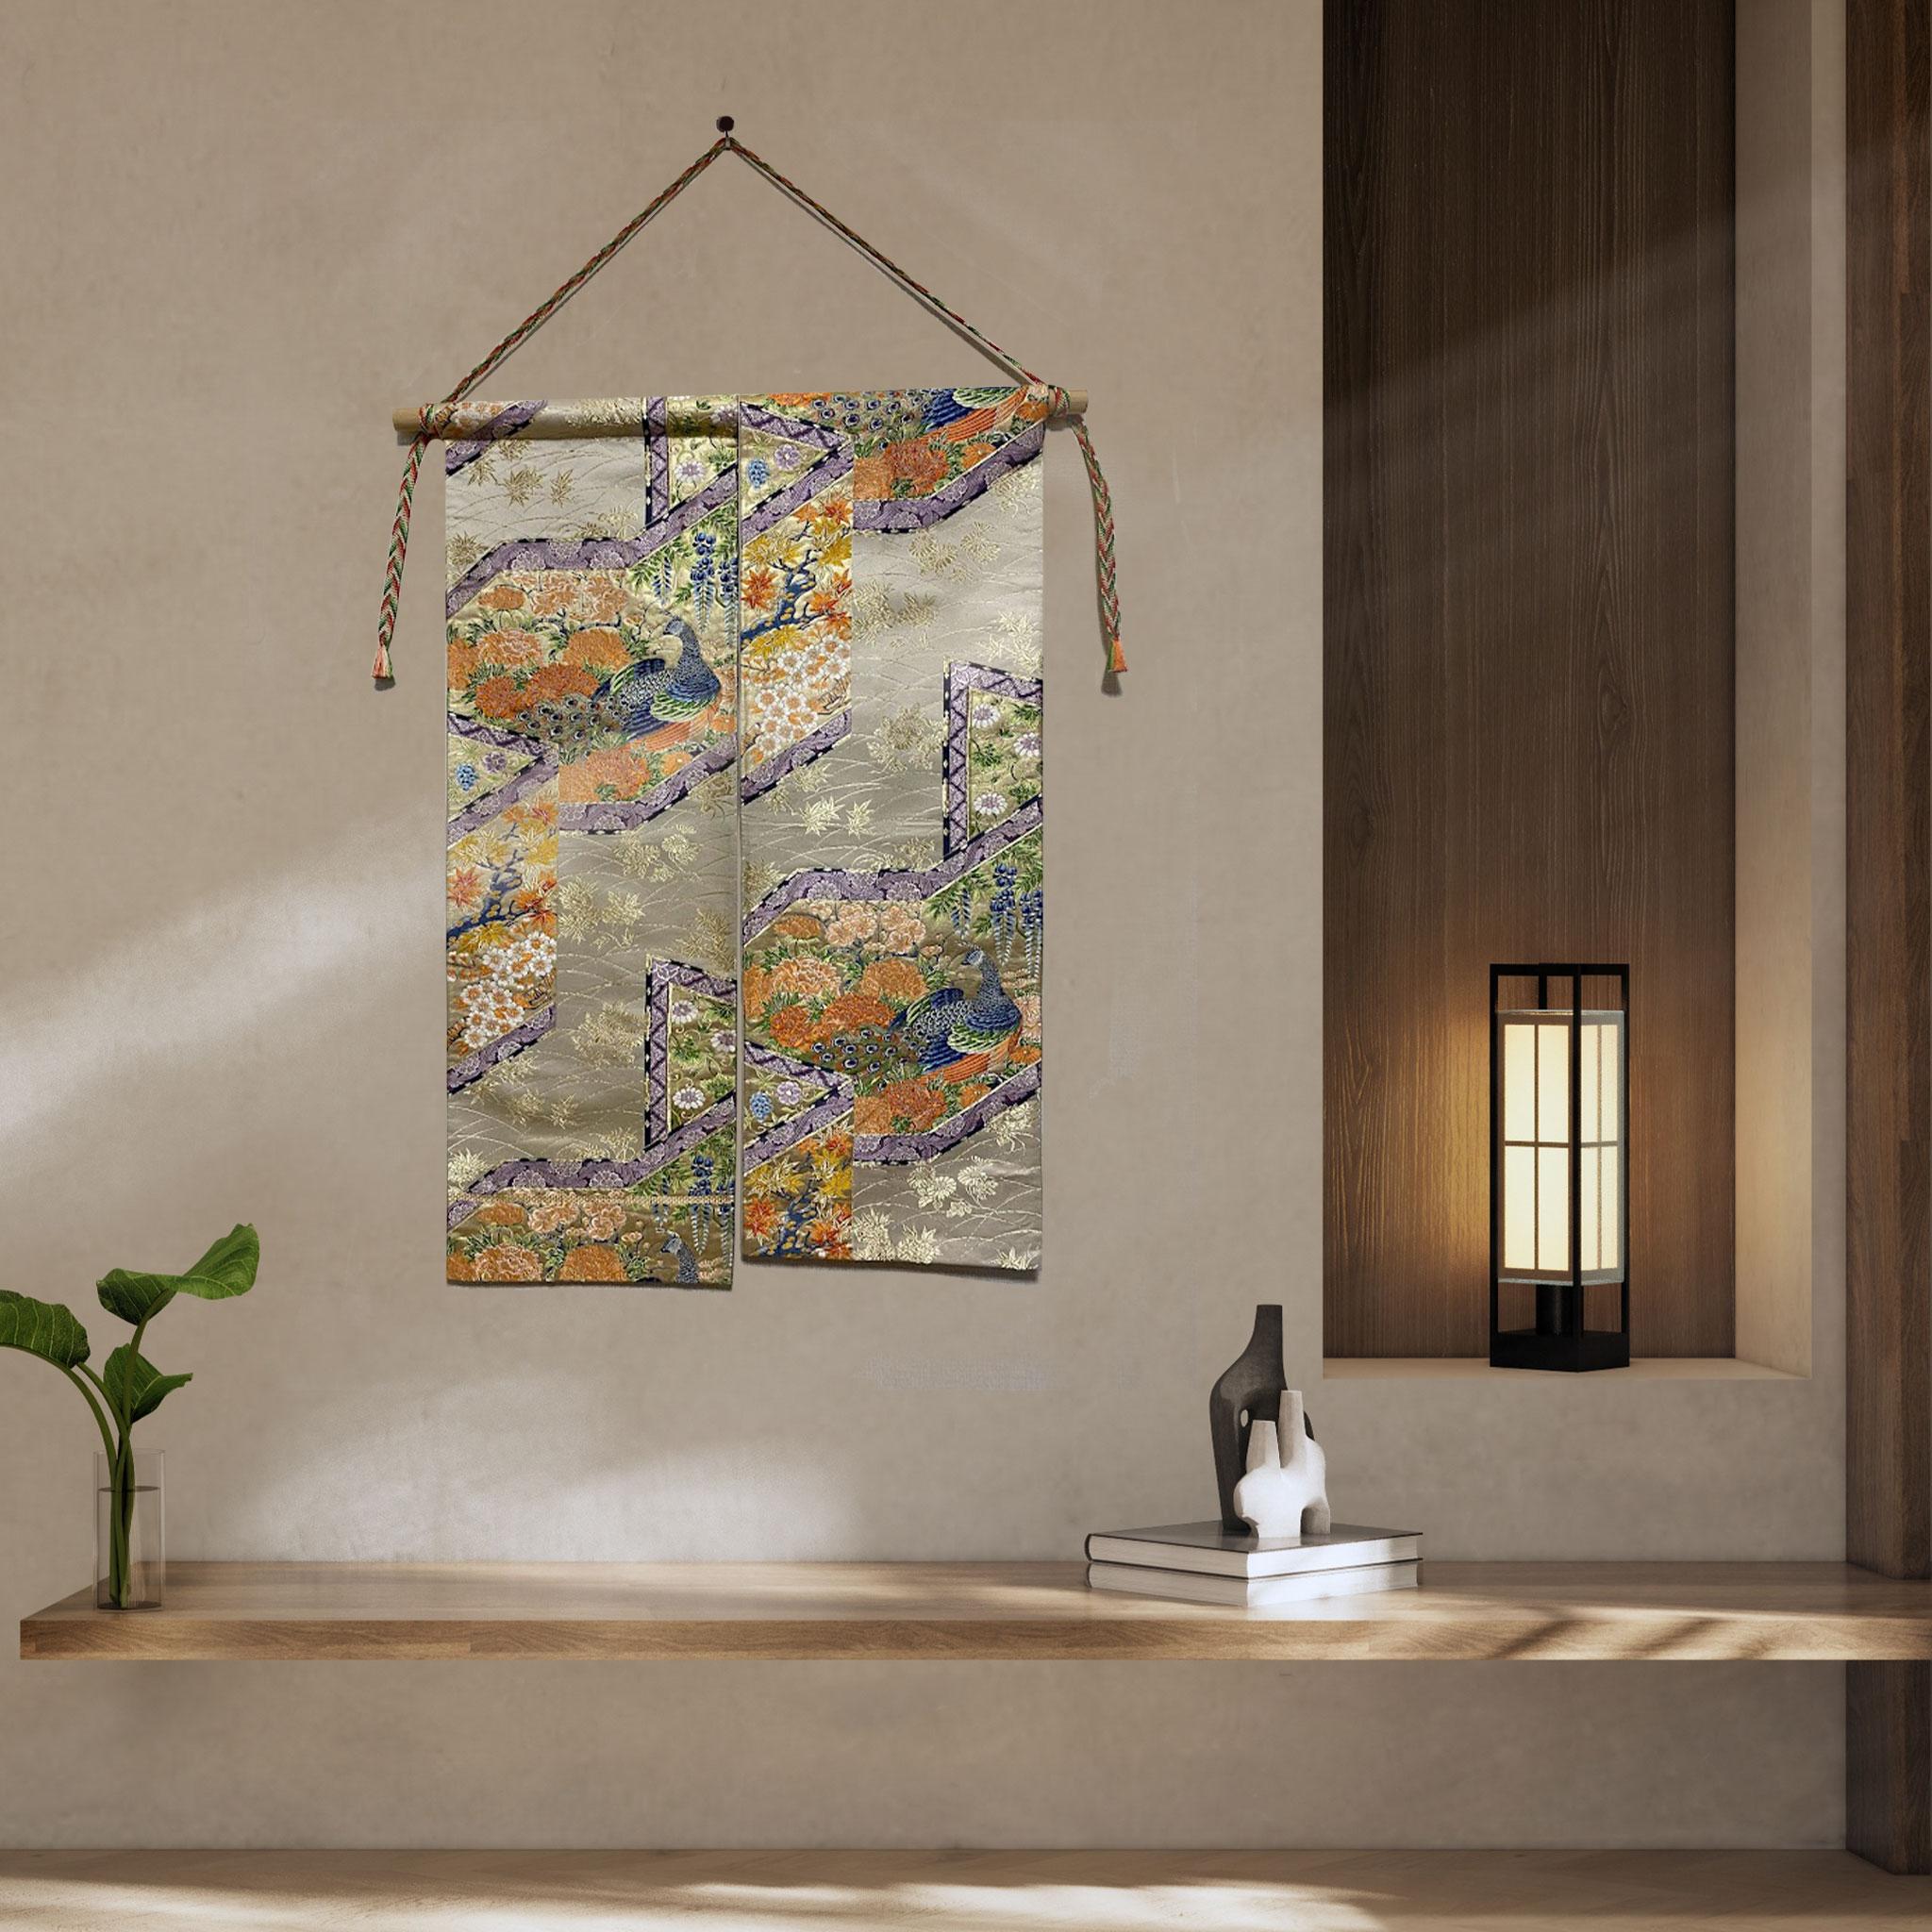 Cette tapisserie de kimono, soigneusement et minutieusement brodée par des artisans japonais, est unique au monde.

 Nous sommes fiers de présenter cette tapisserie, brodée de paons et de fleurs des Quatre Saisons sur un tissu de soie basé sur la